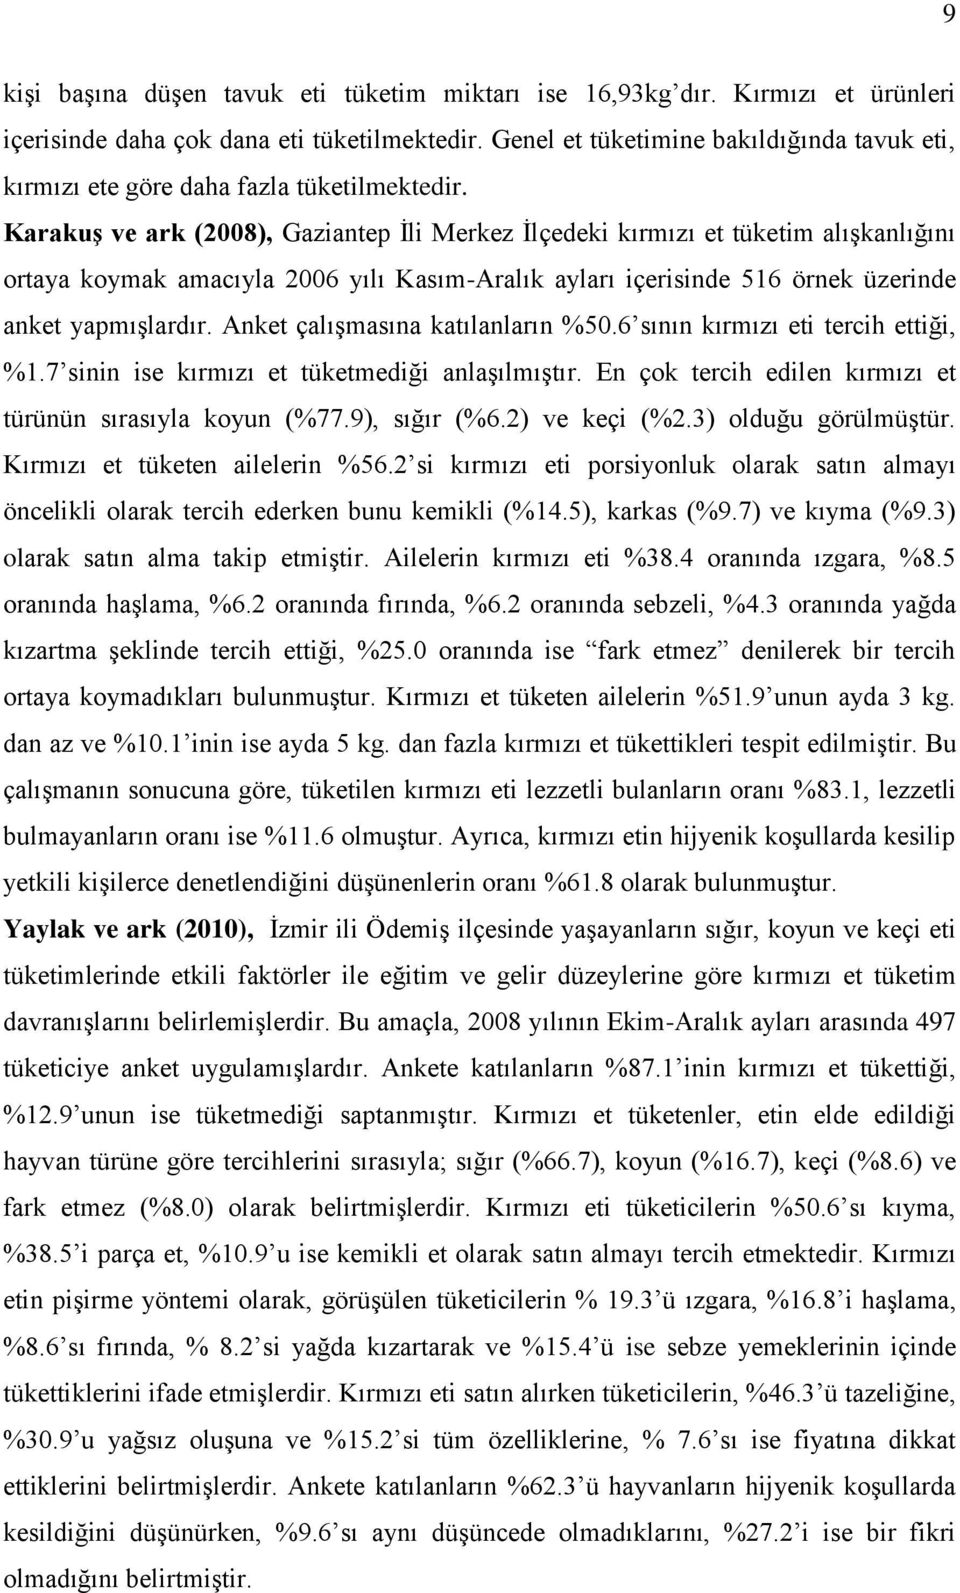 KarakuĢ ve ark (2008), Gaziantep Ġli Merkez Ġlçedeki kırmızı et tüketim alıģkanlığını ortaya koymak amacıyla 2006 yılı Kasım-Aralık ayları içerisinde 516 örnek üzerinde anket yapmıģlardır.